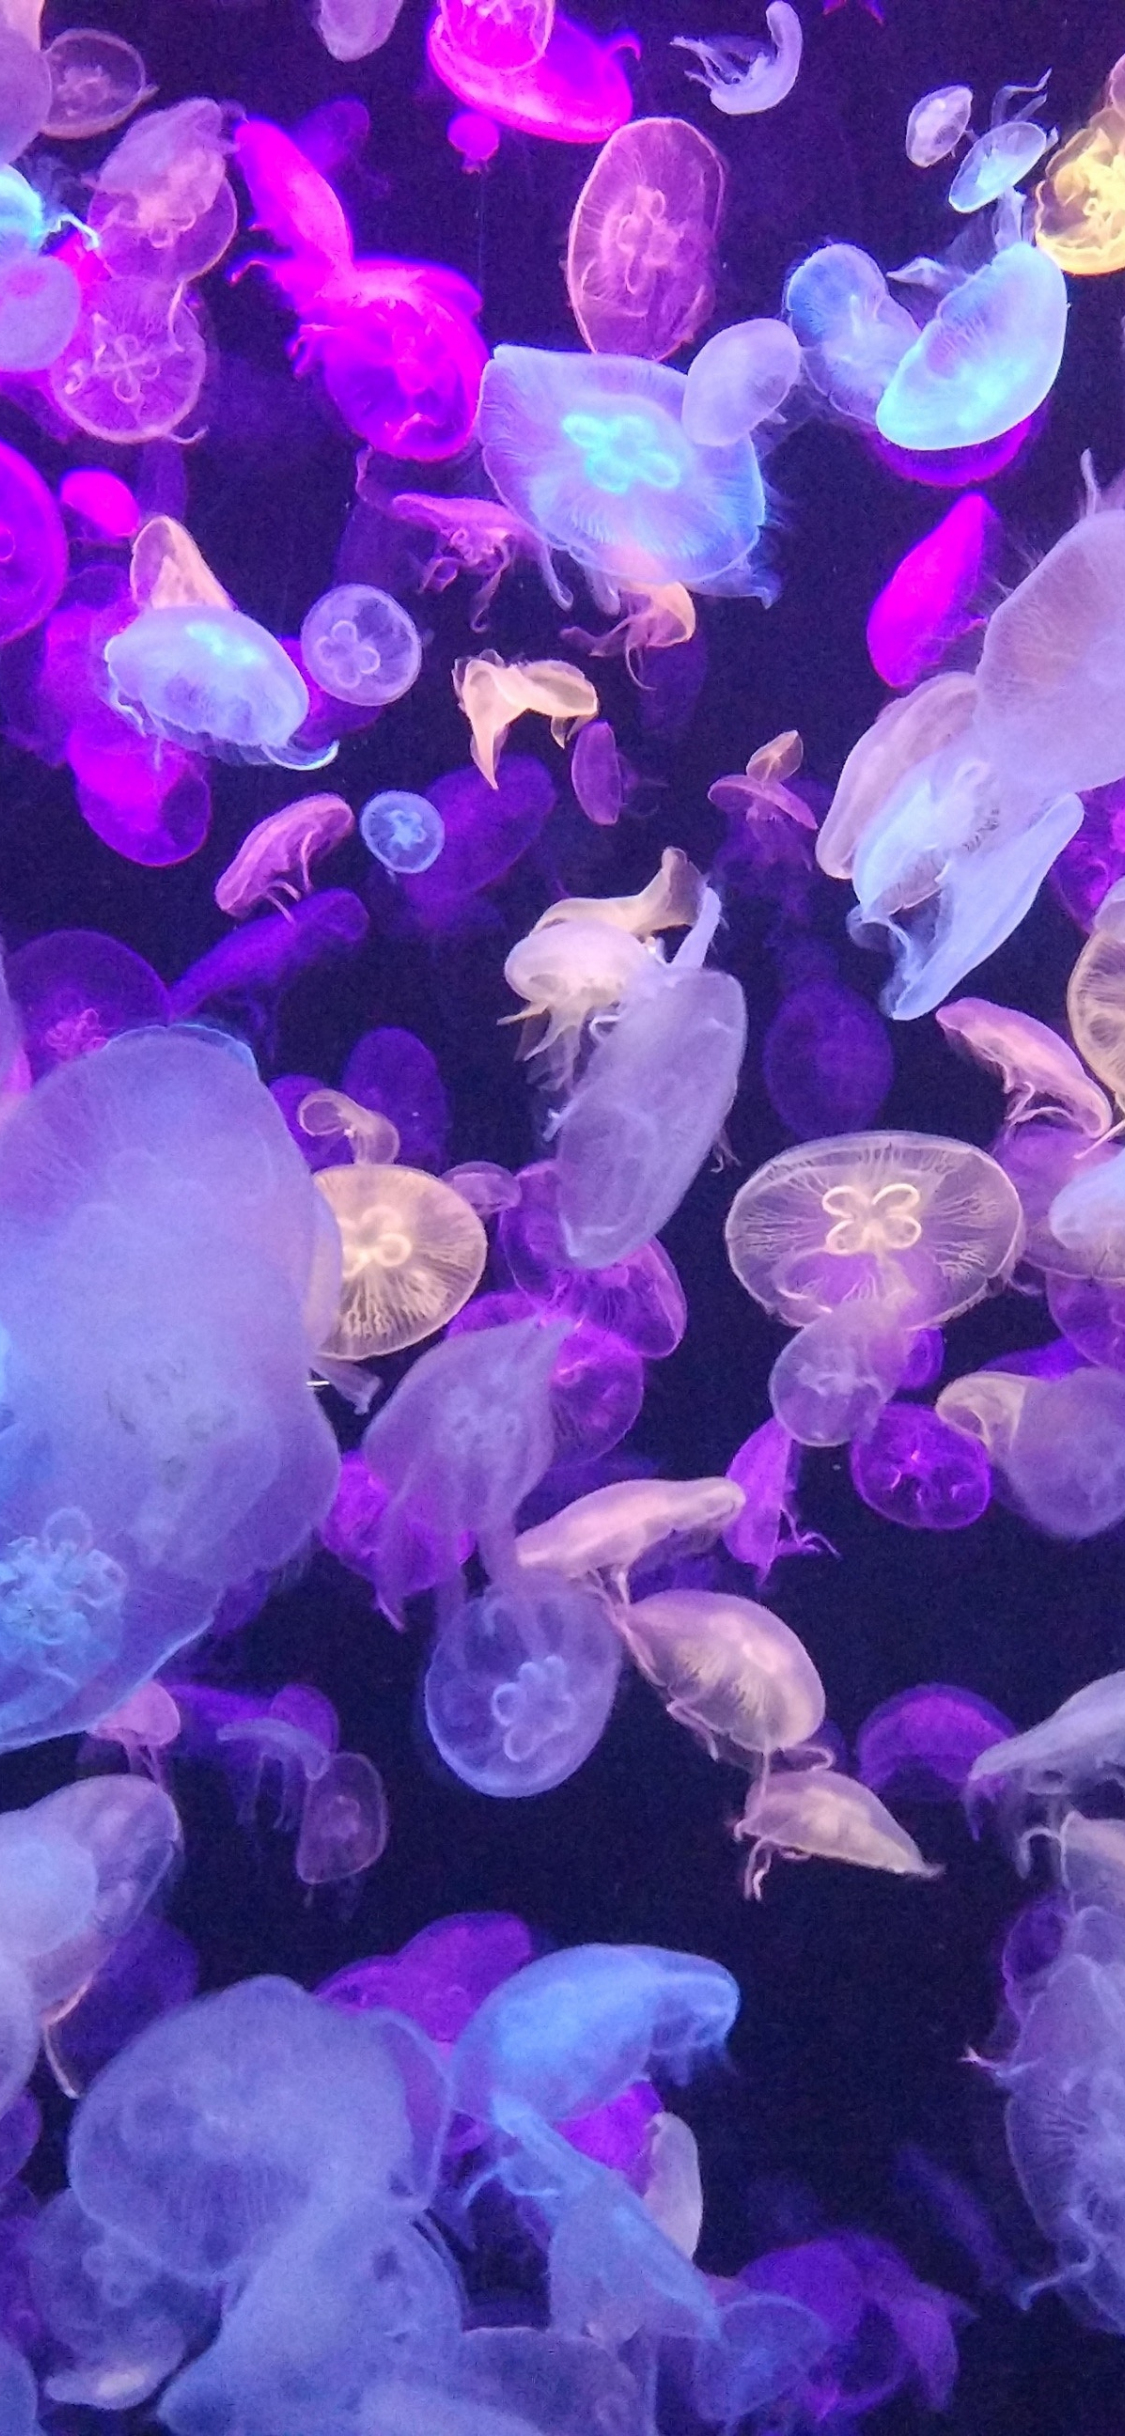 Những con sứa có thể trông rất kỳ quặc ngoài đời thực, nhưng lại trông vô cùng đẹp trong ảnh. Hãy tìm hiểu thêm về loài sinh vật này và khám phá bức ảnh tuyệt đẹp kết nối ở đây.